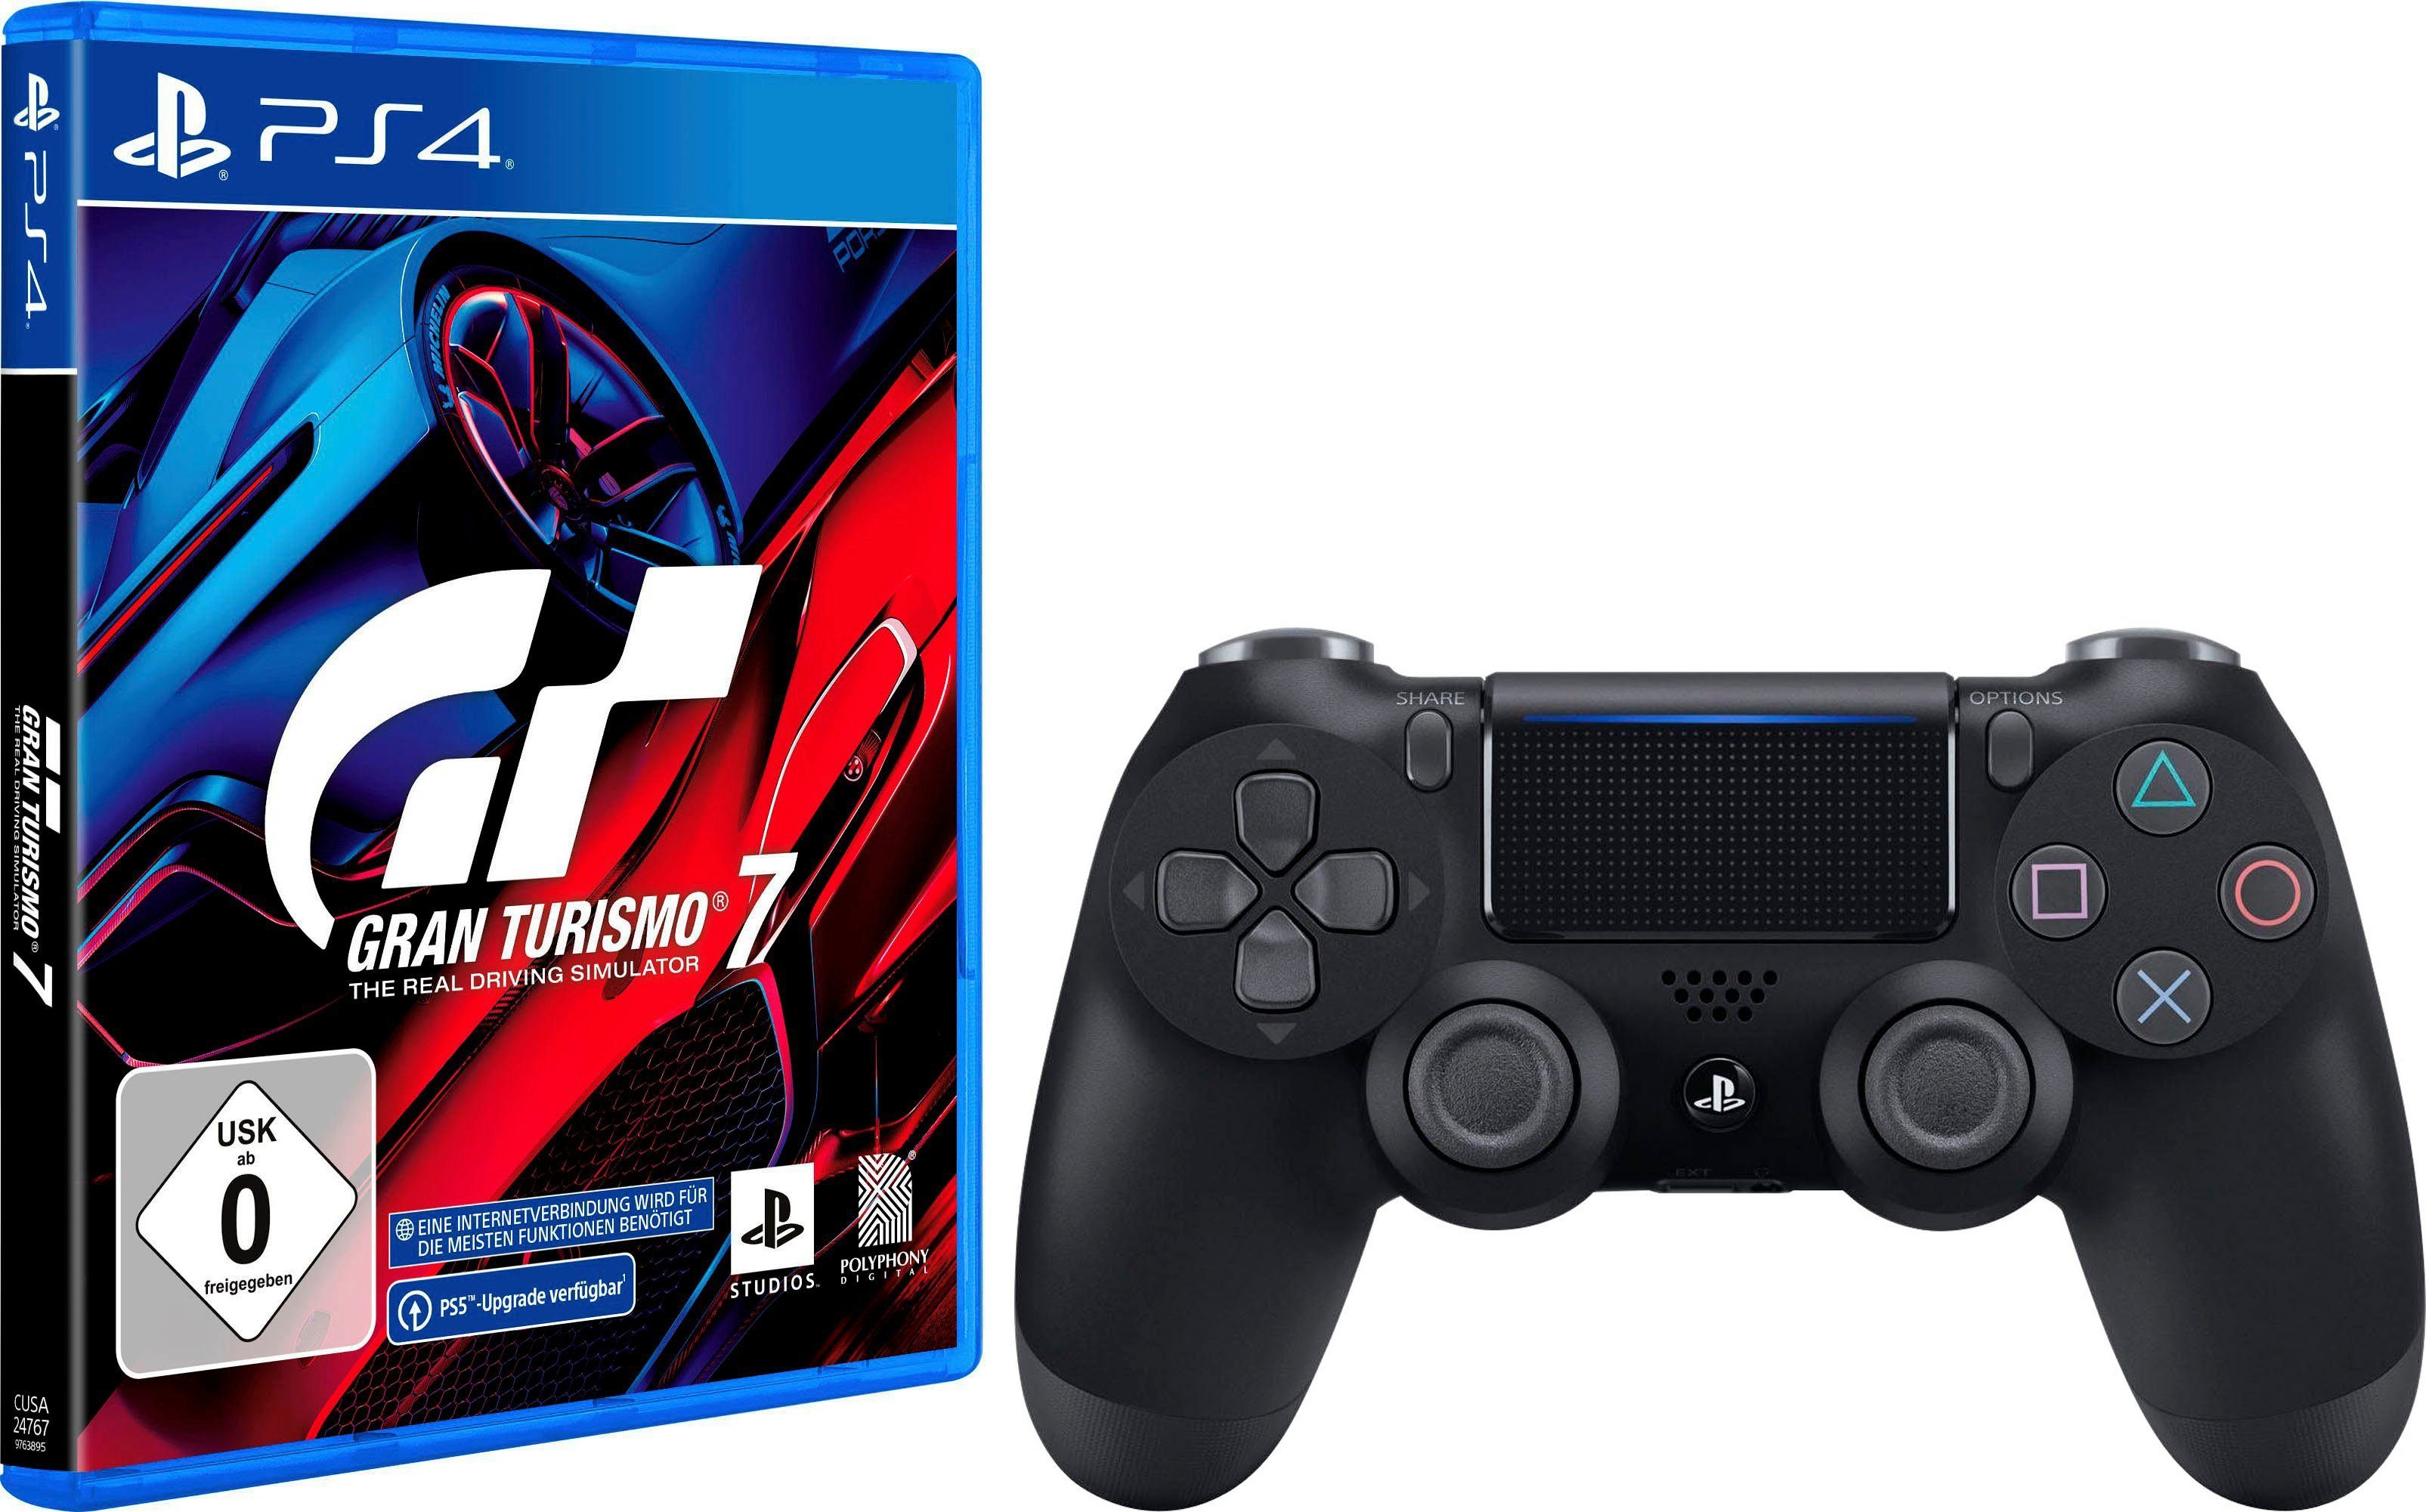 Gran Turismo 7 & Dualshock 4 Controller PlayStation 4, Ein noch  realistischeres Fahrerlebnis erwartet dich dank haptischem Feedback